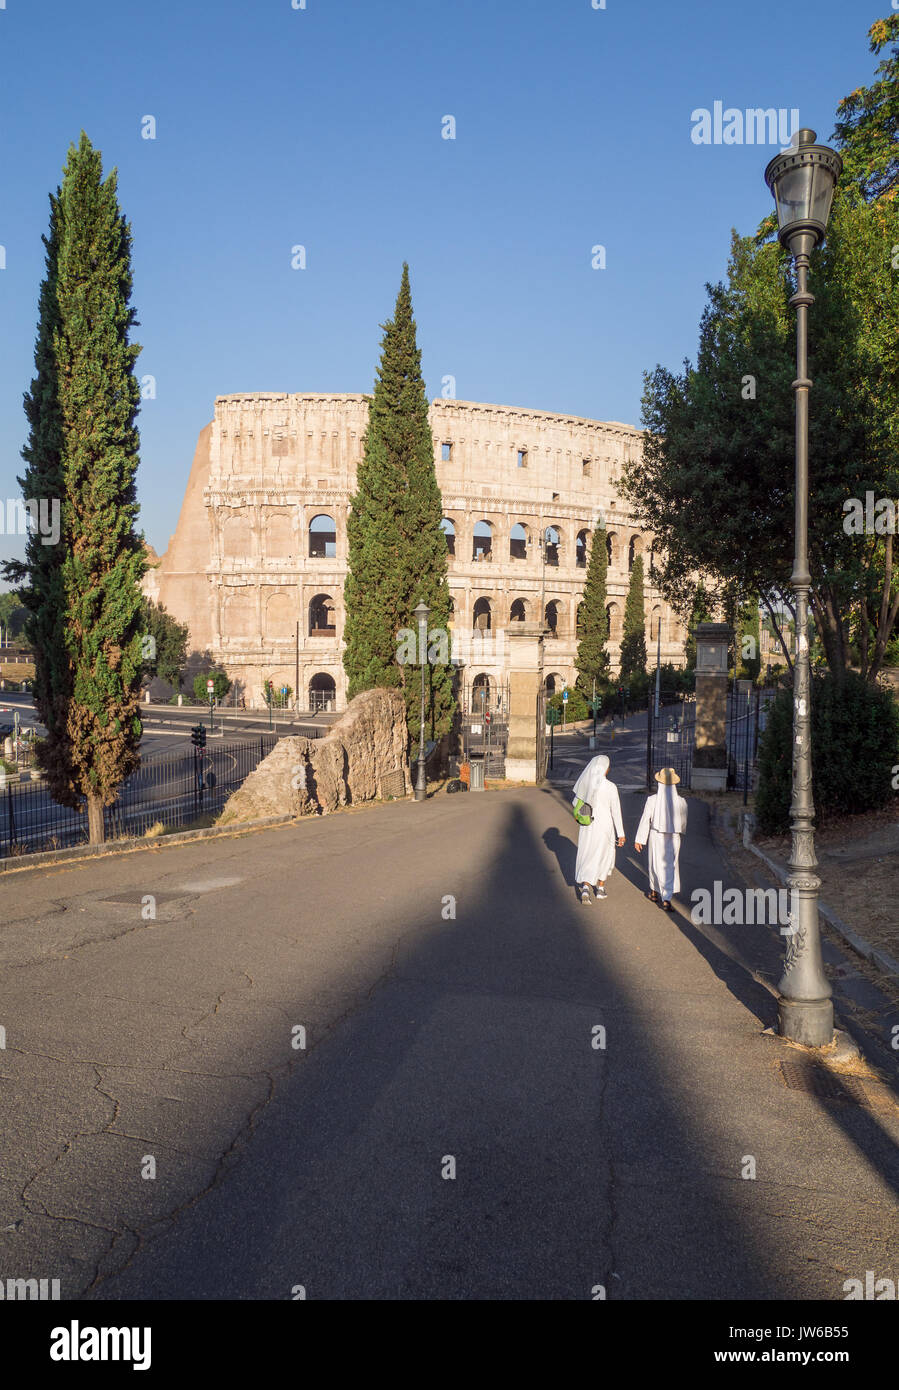 Rome, Italie - Les ruines archéologiques avec Colisée dans le centre historique de Rome, nommé Forums Impériaux, dans un dimanche matin. Banque D'Images